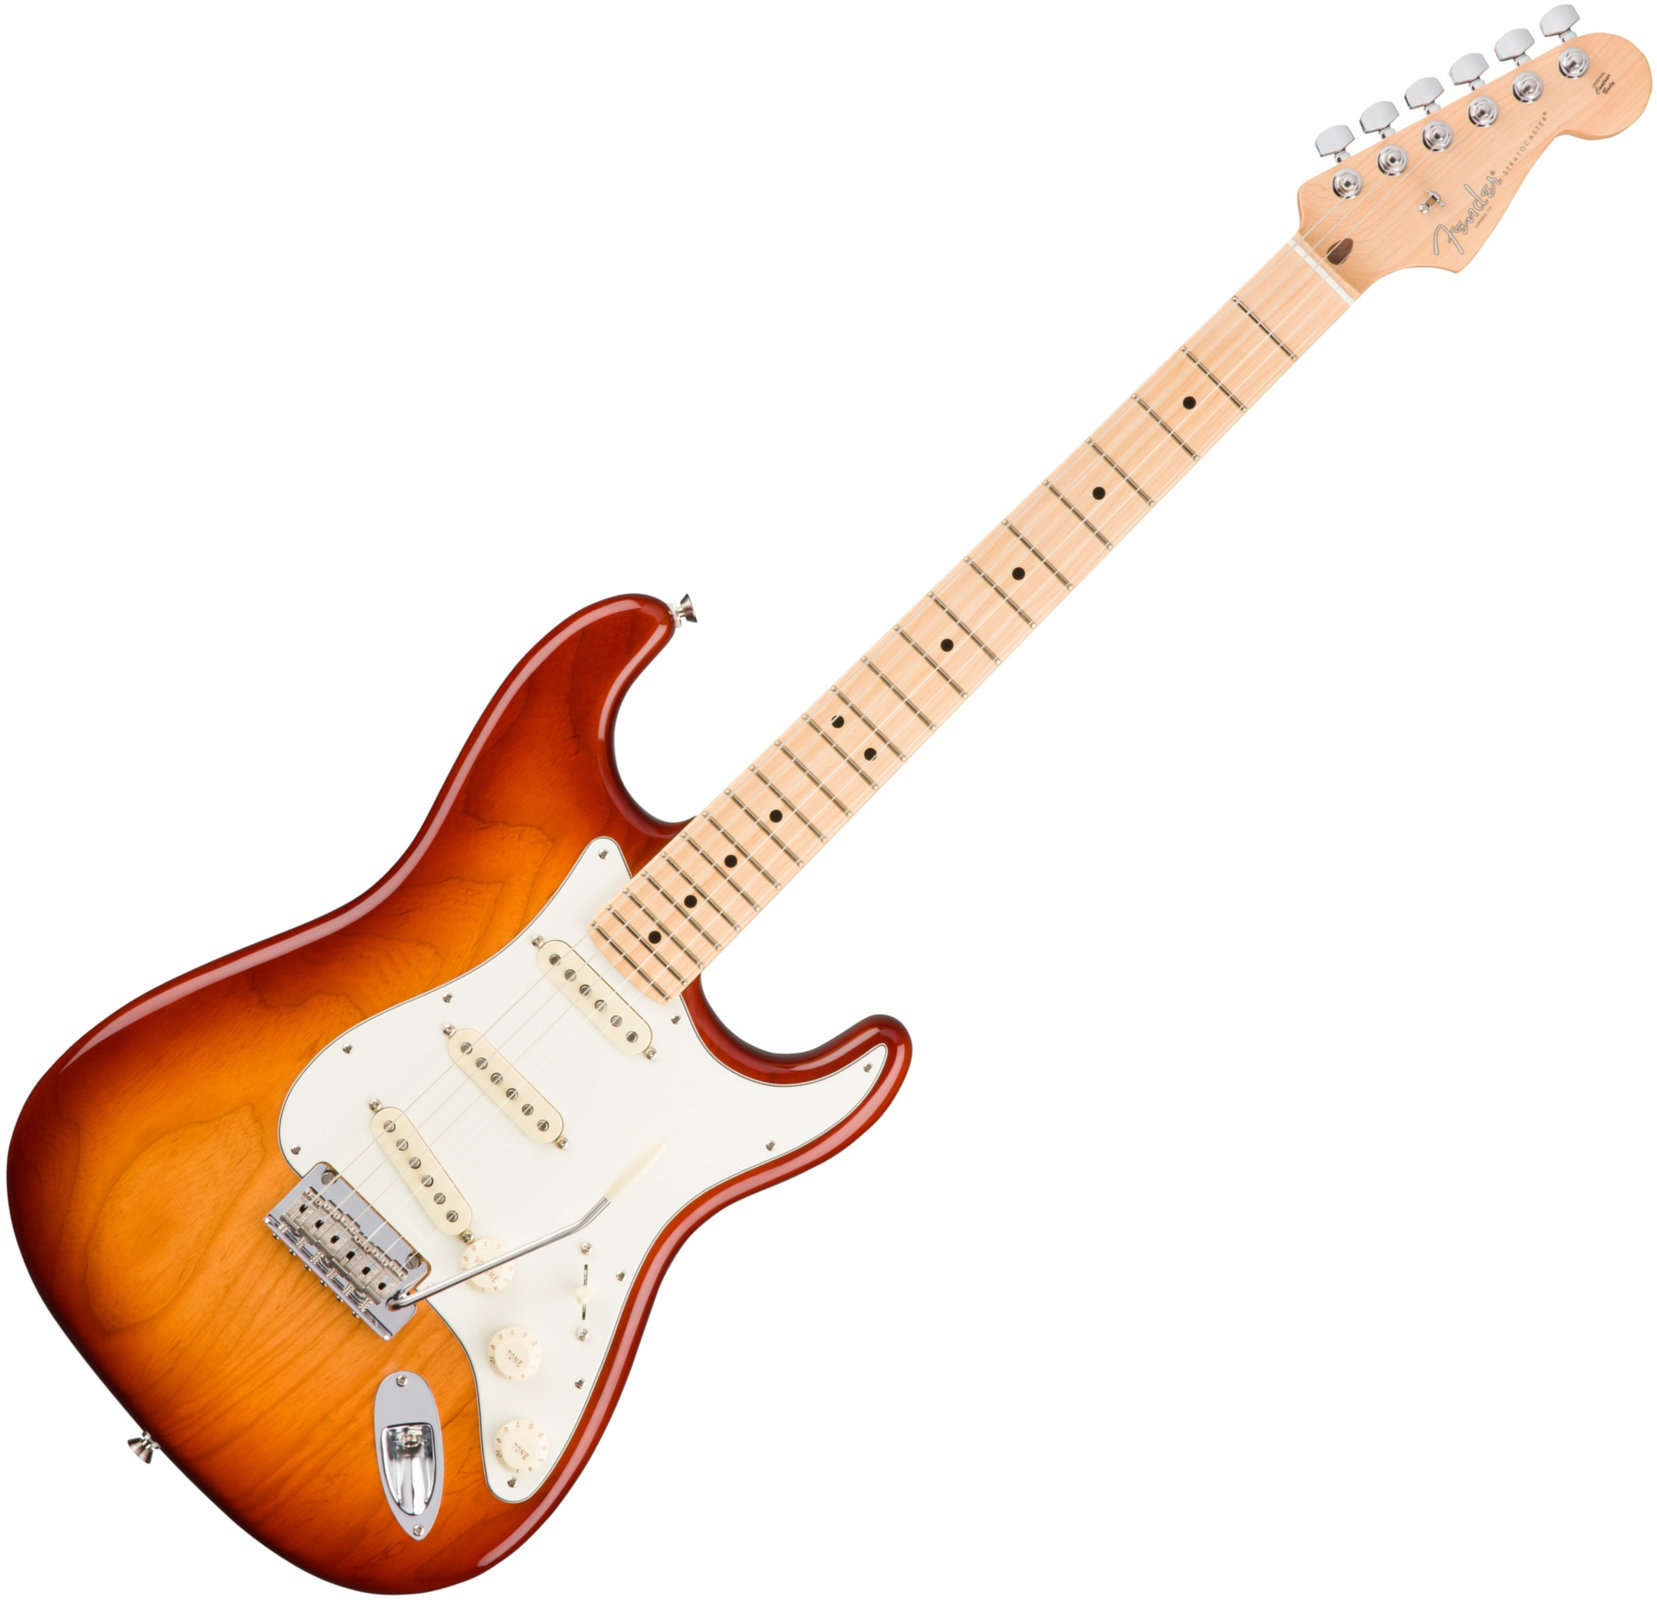 Sähkökitara Fender American PRO Stratocaster MN Sienna Sunburst